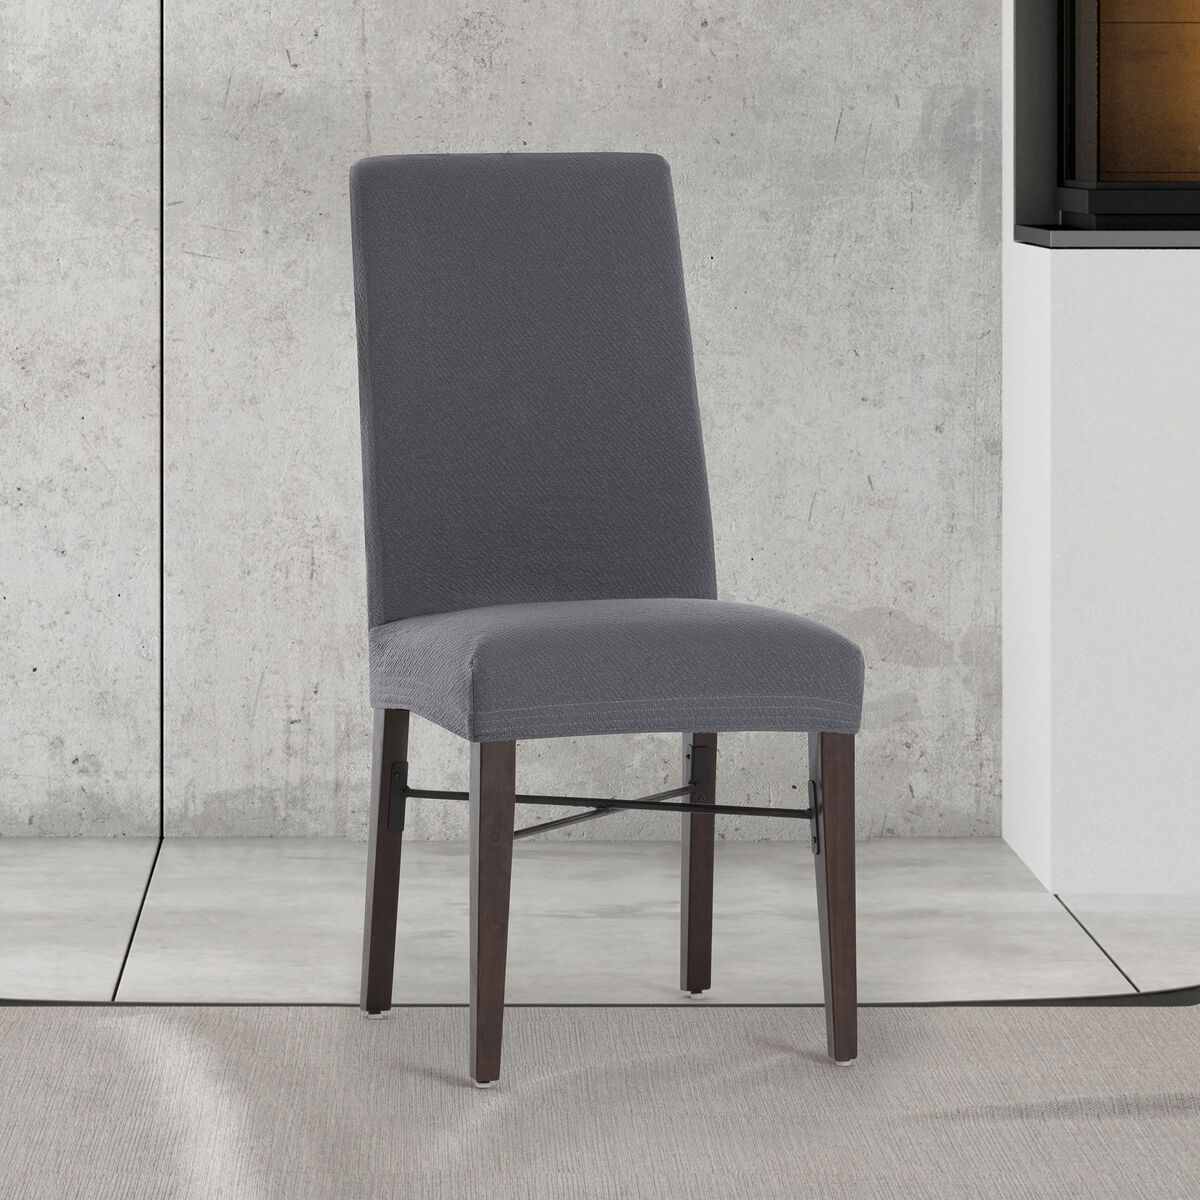 Chair Cover Eysa BRONX Dark grey 50 x 55 x 50 cm 2 Units